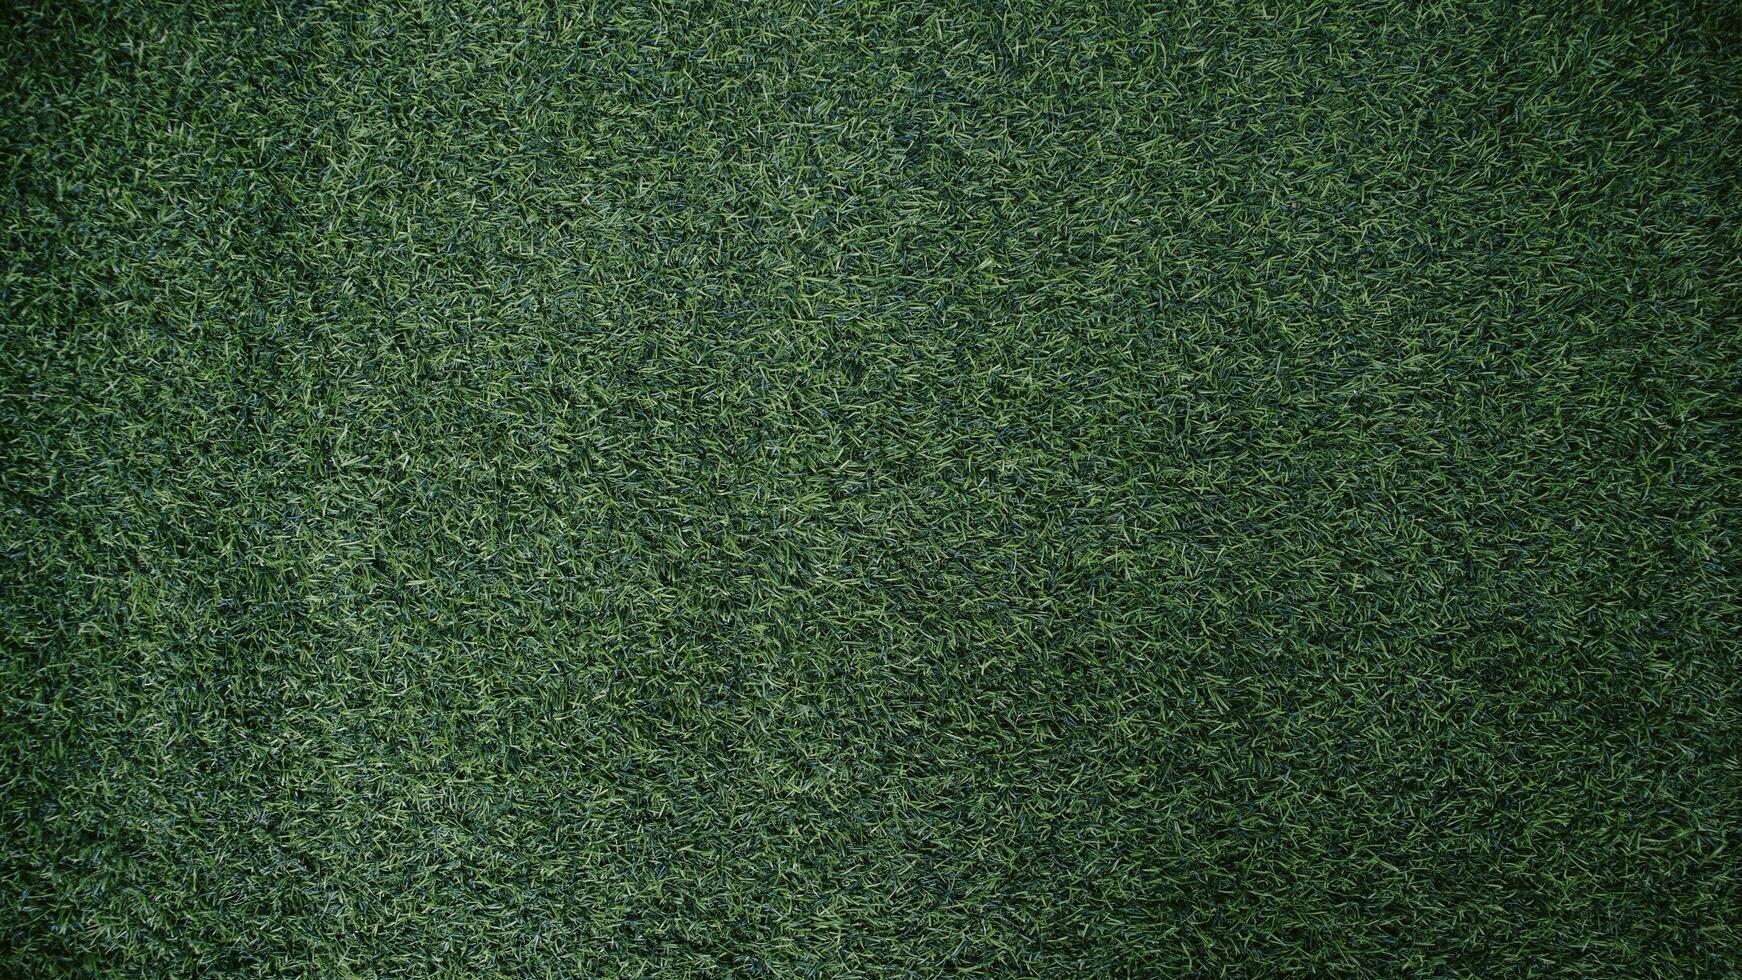 groen gras structuur achtergrond gras tuin concept gebruikt voor maken groen achtergrond Amerikaans voetbal toonhoogte, gras golf, groen gazon patroon getextureerde achtergrond.. foto